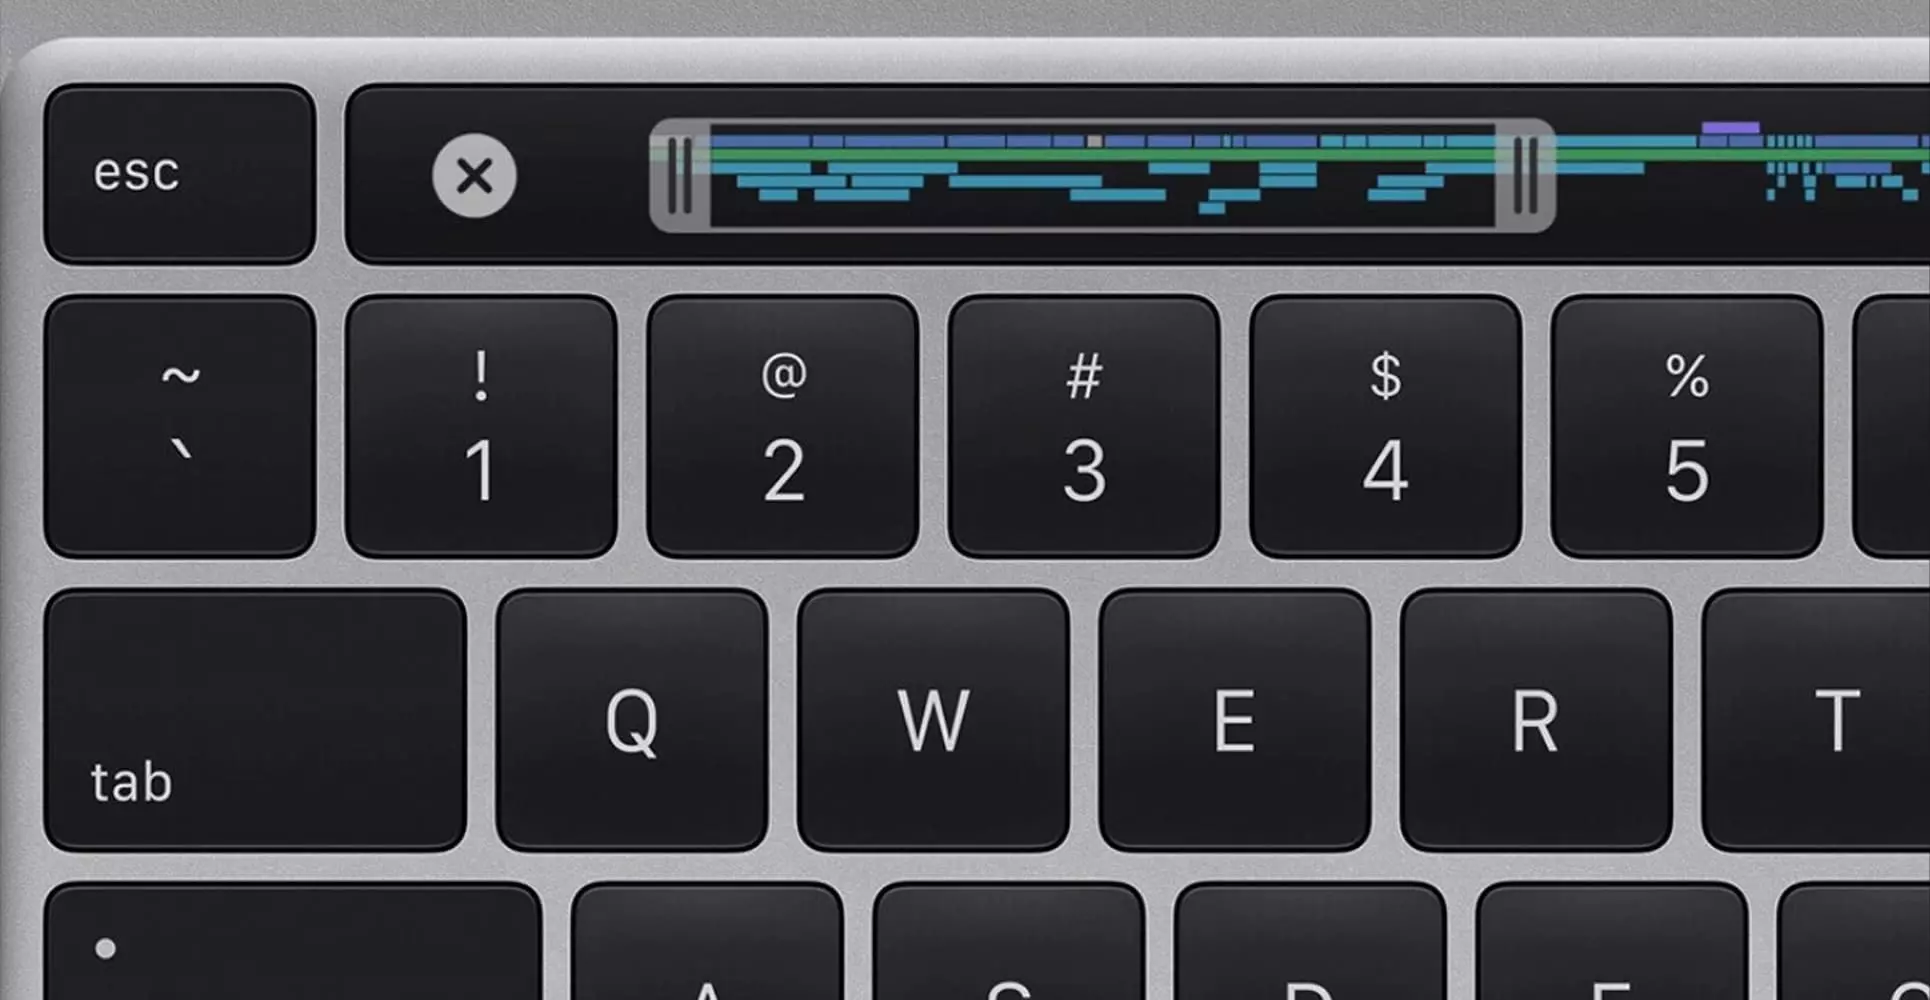 Apple все же представили обновленный MacBook Pro 13